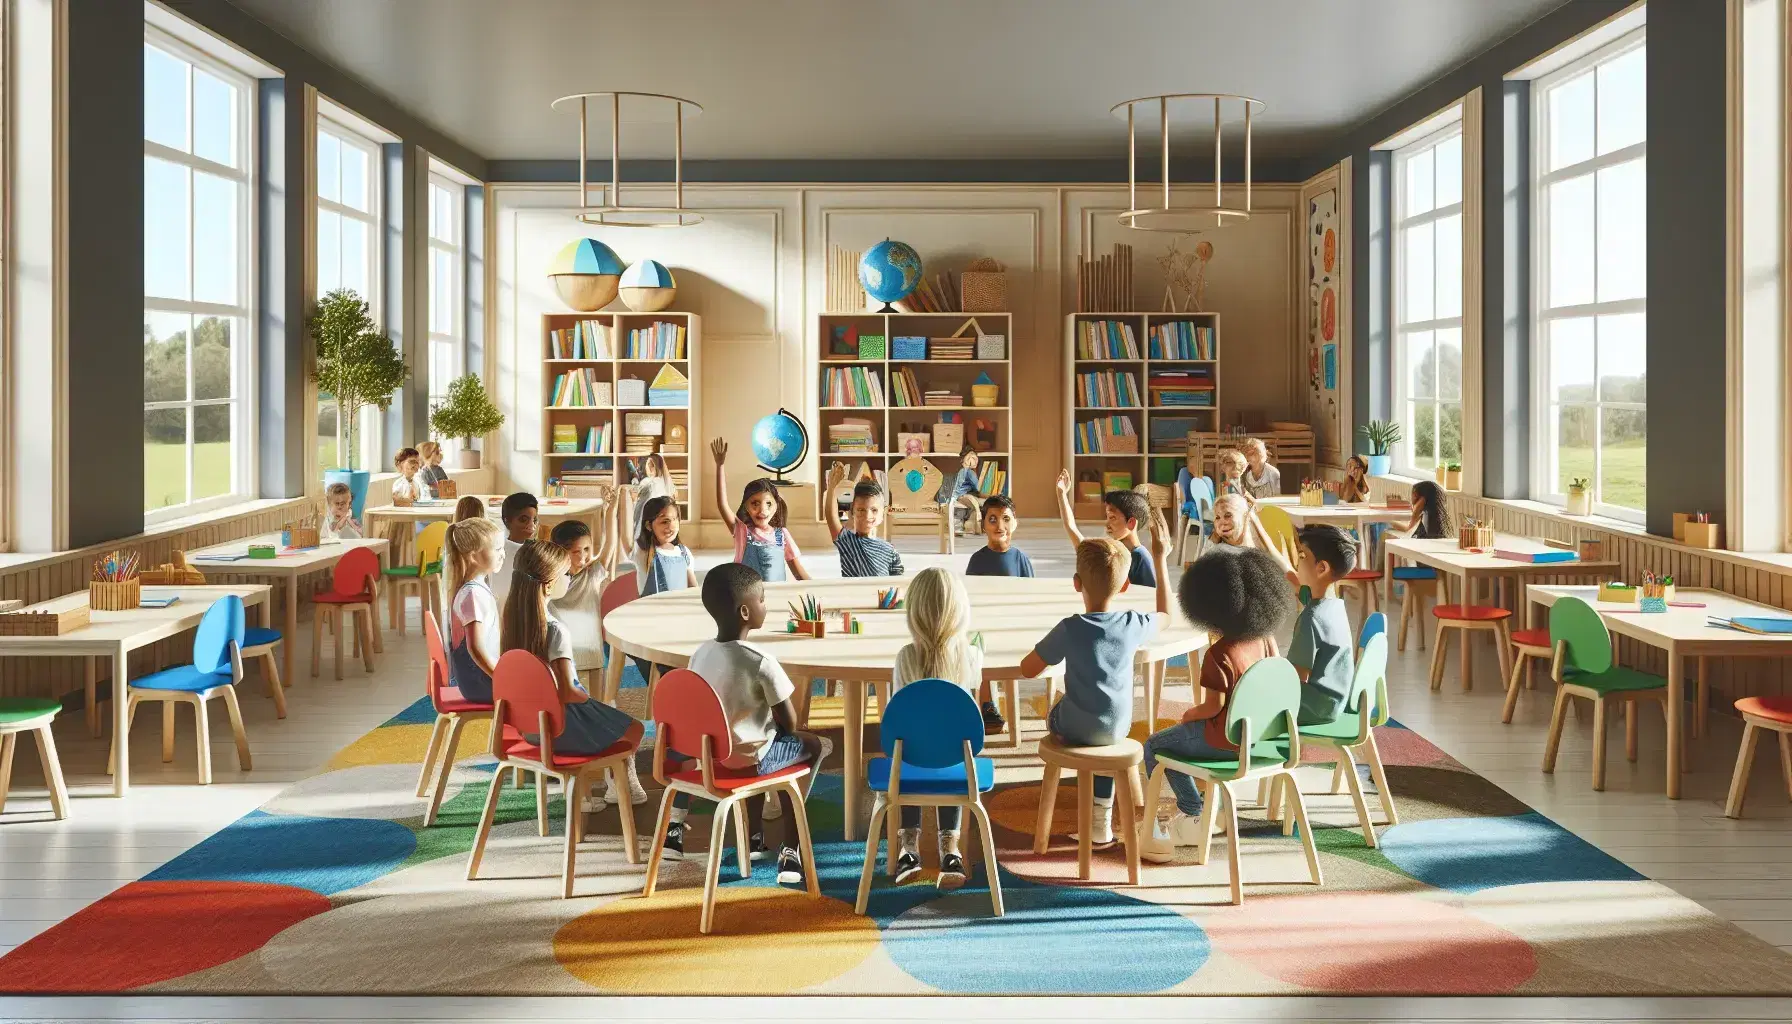 Aula luminosa con niños de diversas etnias interactuando alrededor de una mesa redonda y sentados en el suelo, estantes con libros y ventanas con vistas al jardín.